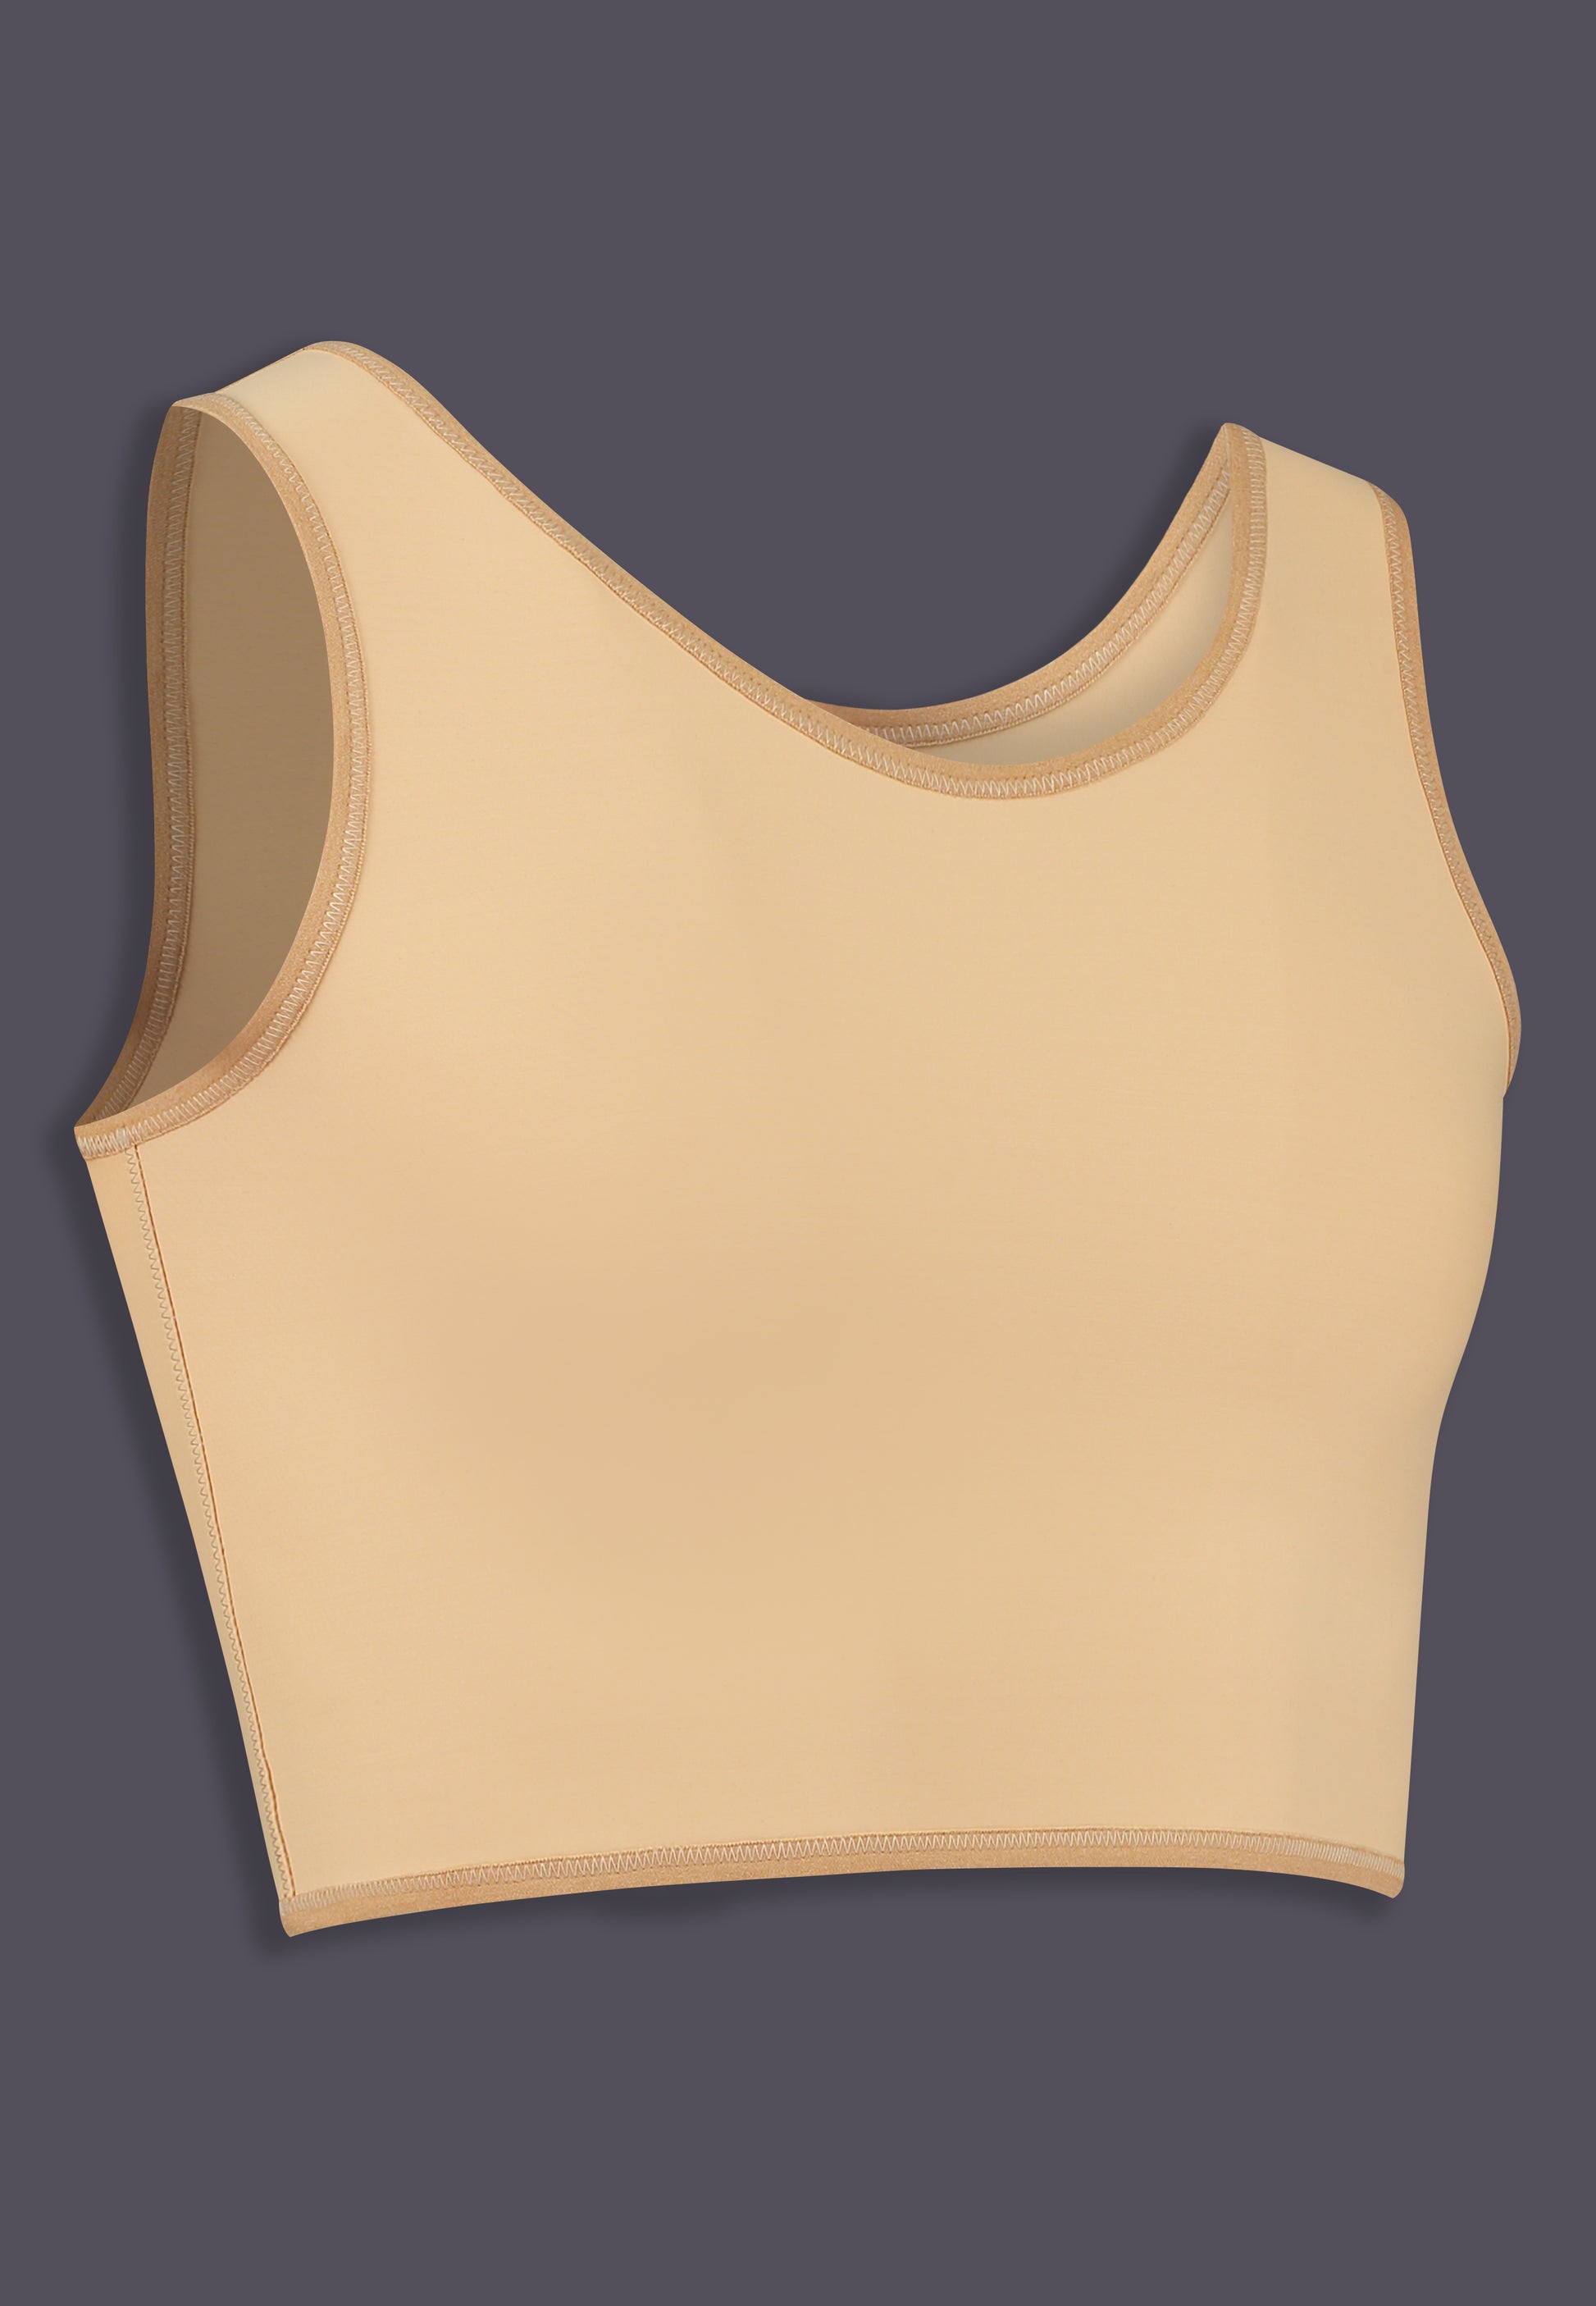 Short chest binder strong beige, UNTAG